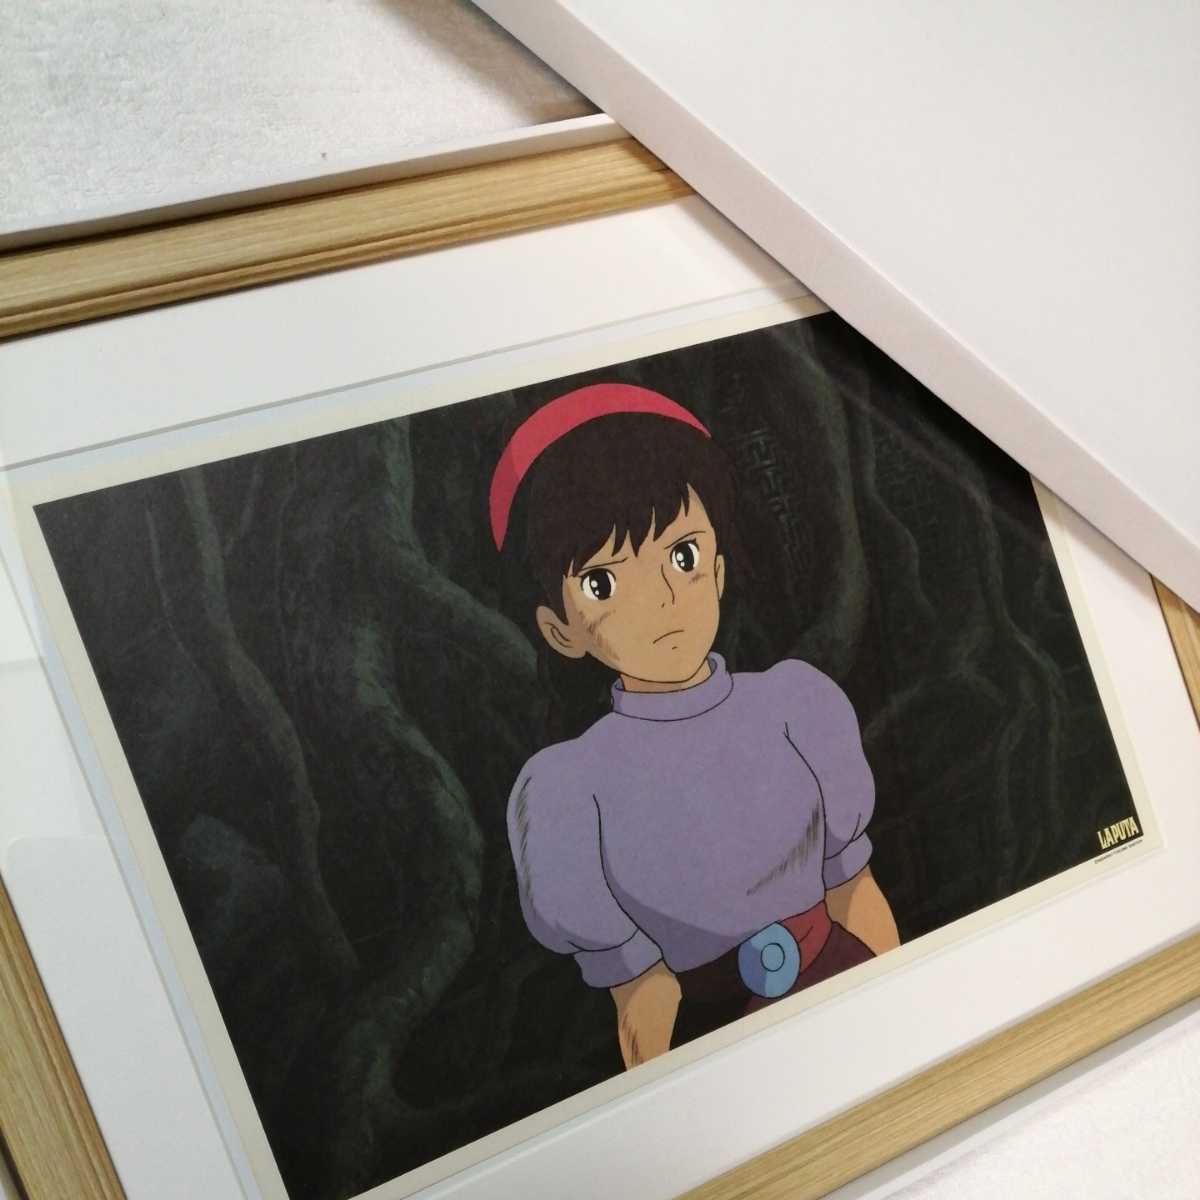 Il y a plus de 30 ans [À cette époque] Studio Ghibli : Château dans le ciel [Objet encadré] Poster, peinture murale, reproduction originale, inspection) cellule, carte postale, Hayao Miyazaki, des bandes dessinées, produits d'anime, autres